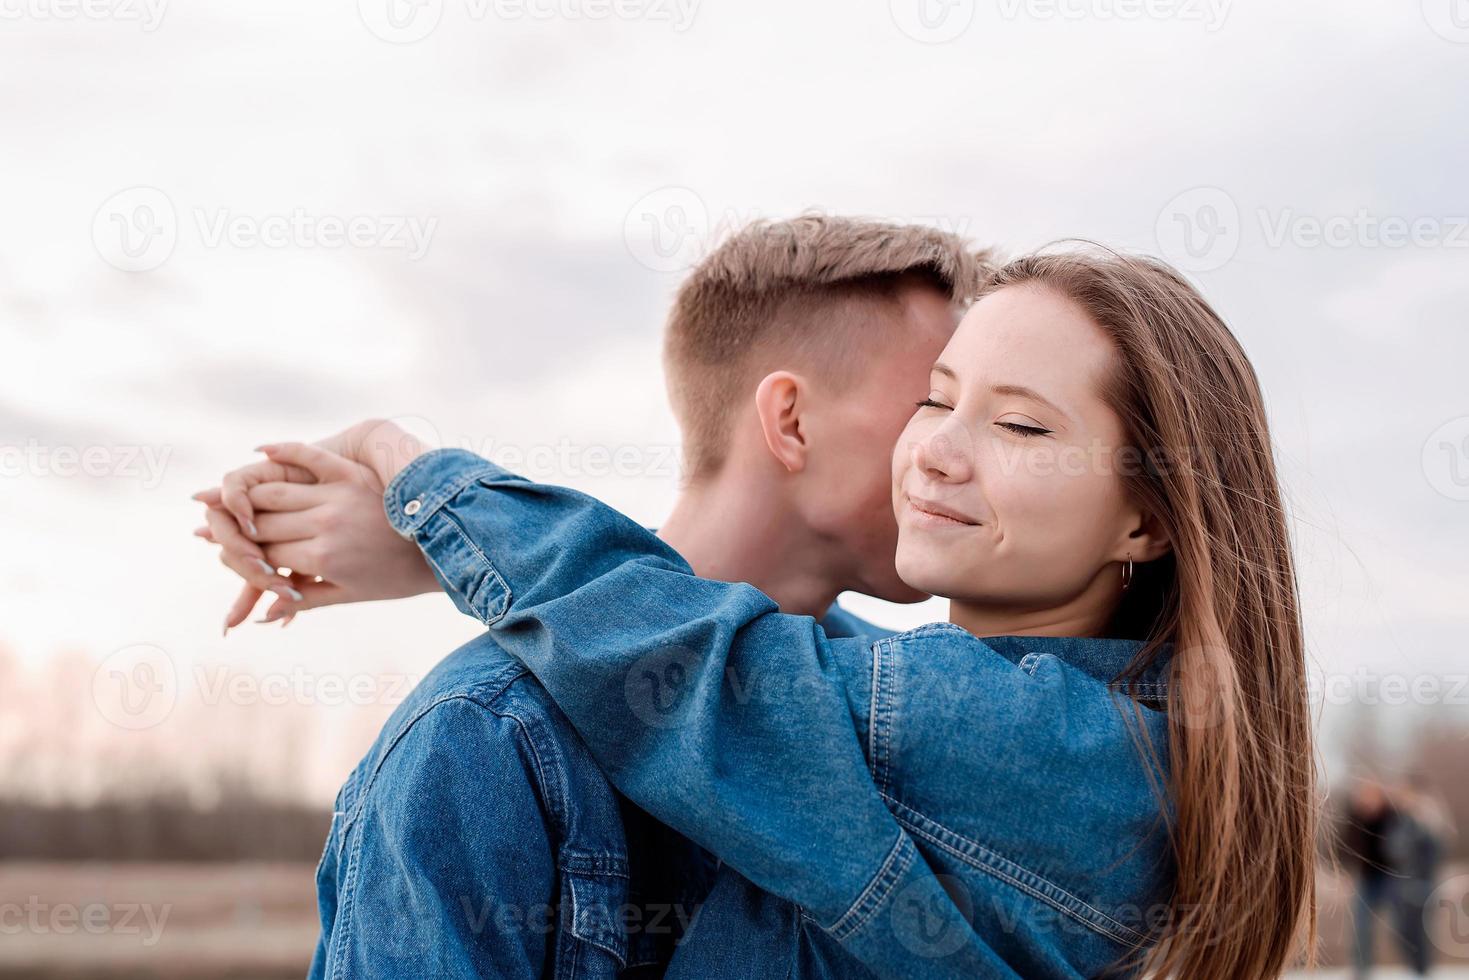 unga älskande par som omfamnar varandra utomhus i parken foto